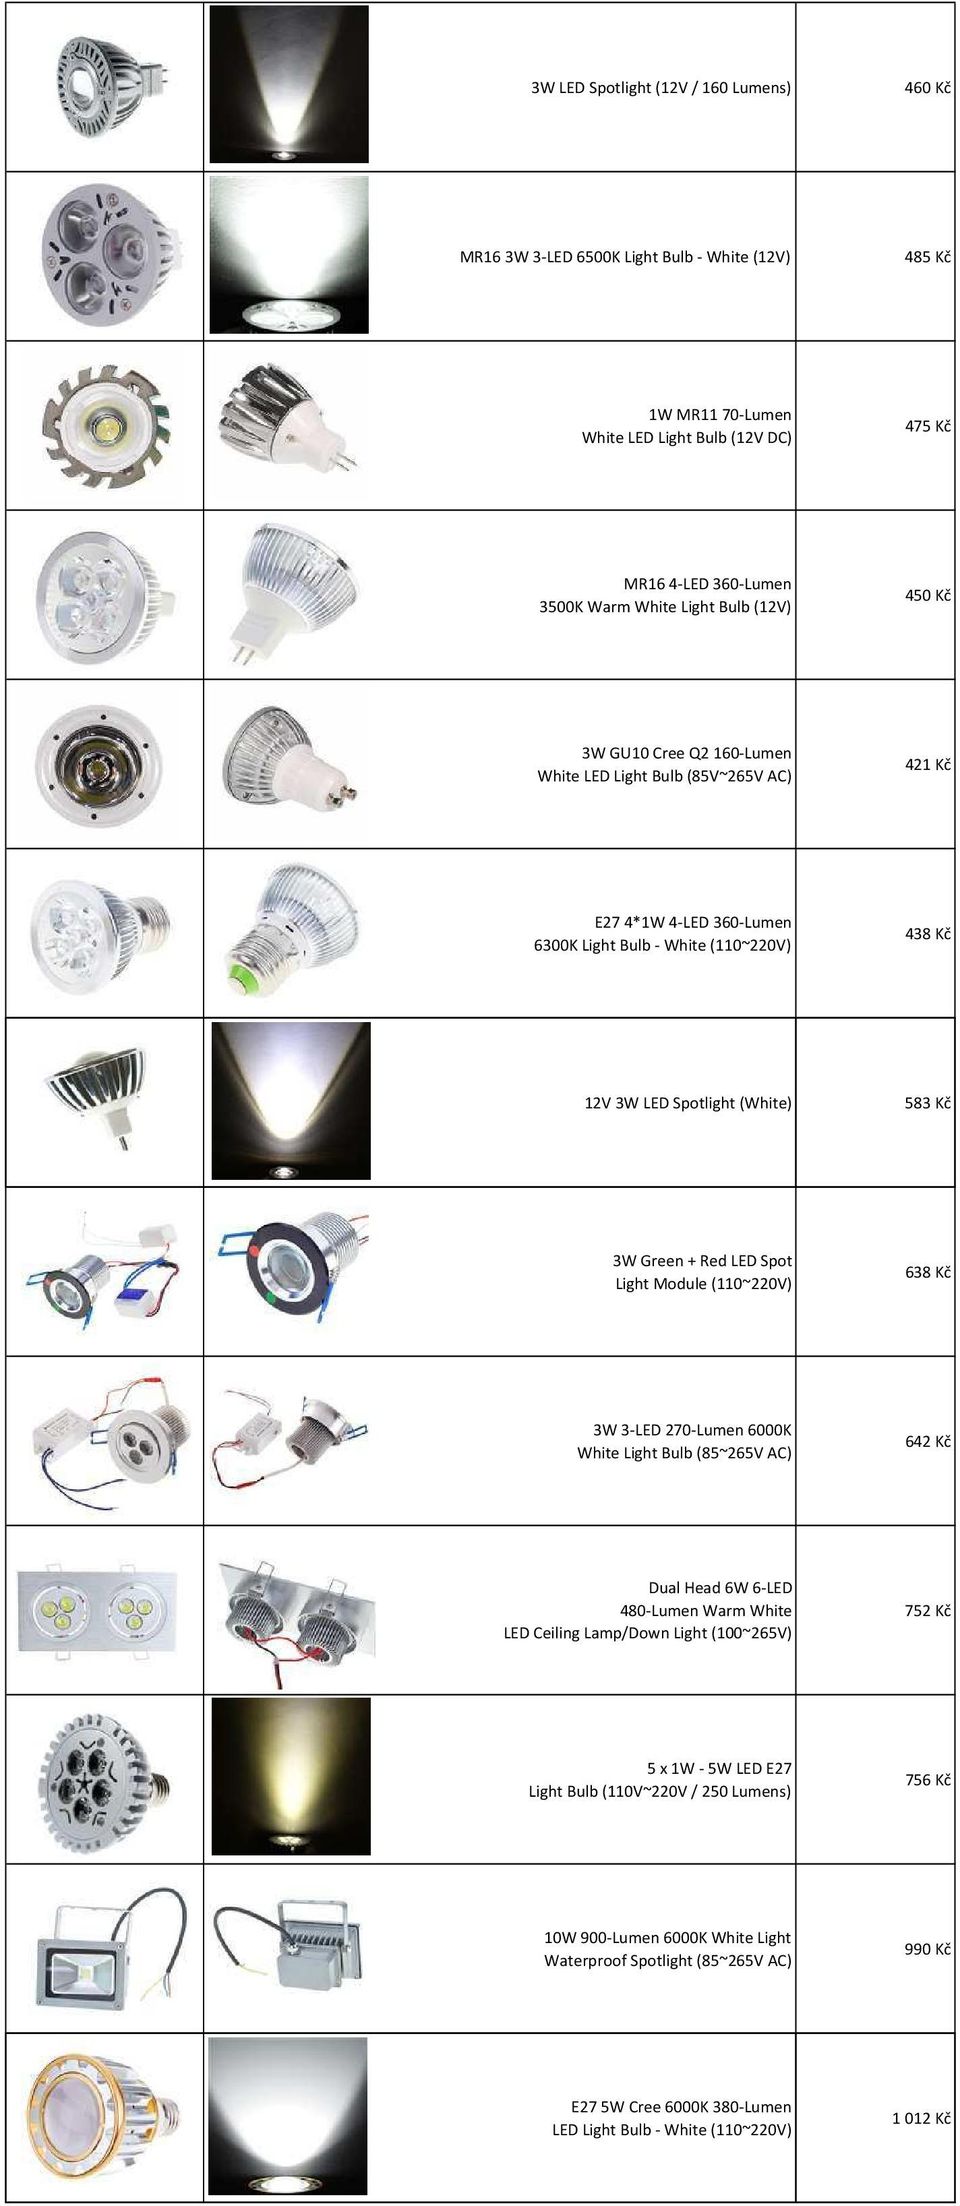 LED Spot Light Module (110~220V) 638 Kč 3W 3-LED 270-Lumen 6000K White Light Bulb (85~265V AC) 642 Kč Dual Head 6W 6-LED 480-Lumen Warm White LED Ceiling Lamp/Down Light (100~265V) 752 Kč 5 x 1W -